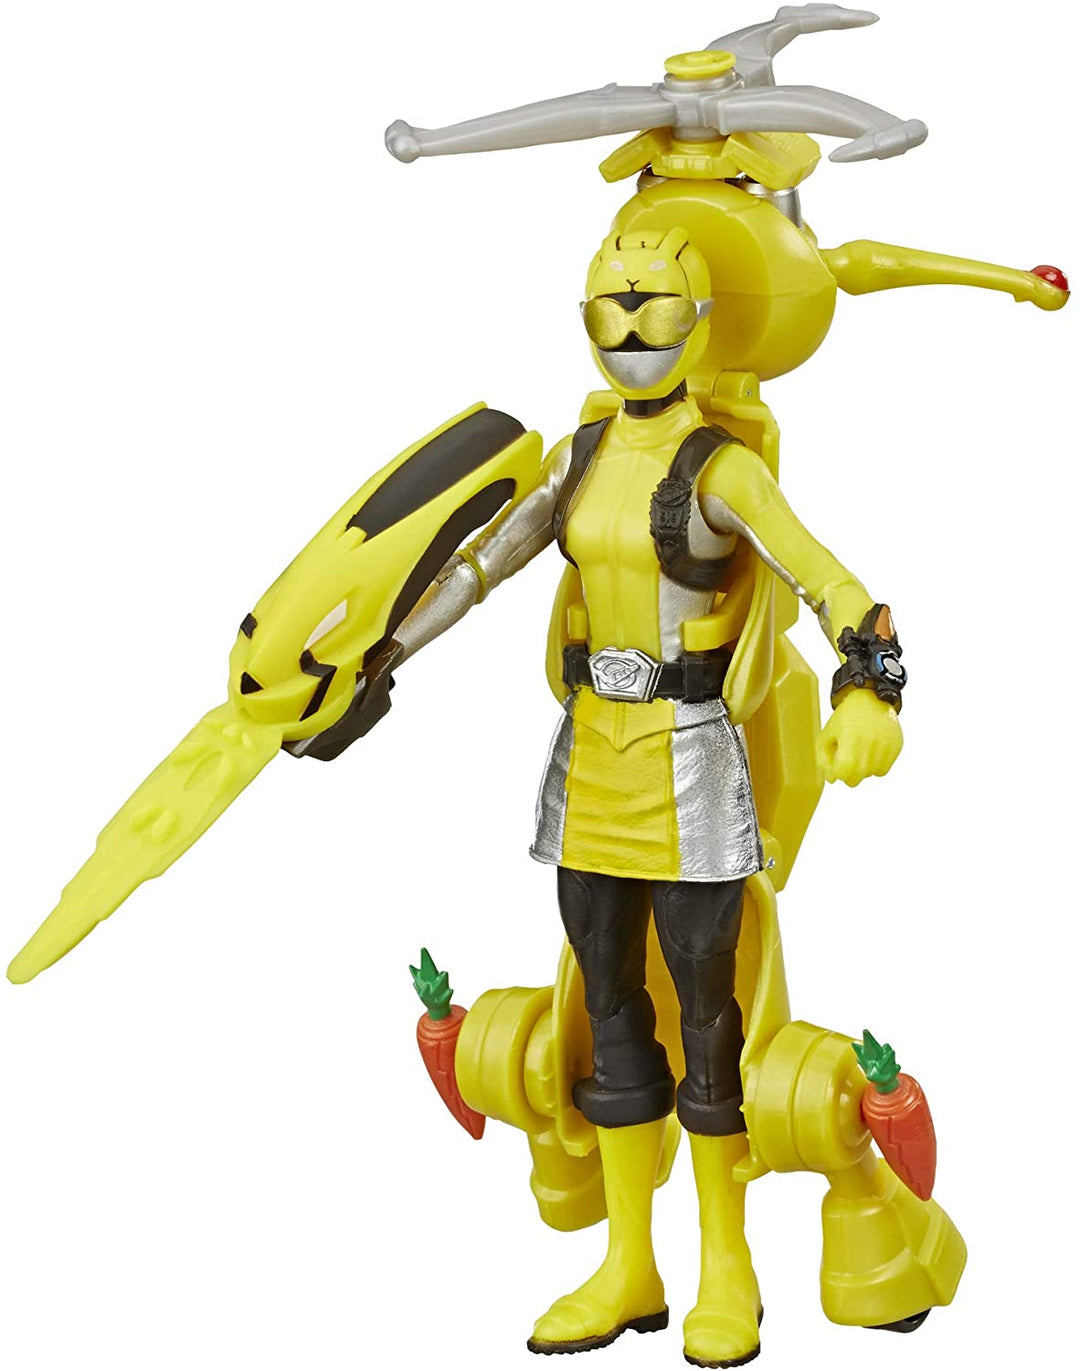 Power Rangers Beast Morphers Yellow Ranger und Morphin Jax Beast Bot, 15 cm große Actionfiguren, 2er-Pack Spielzeuge, inspiriert von der TV-Sendung